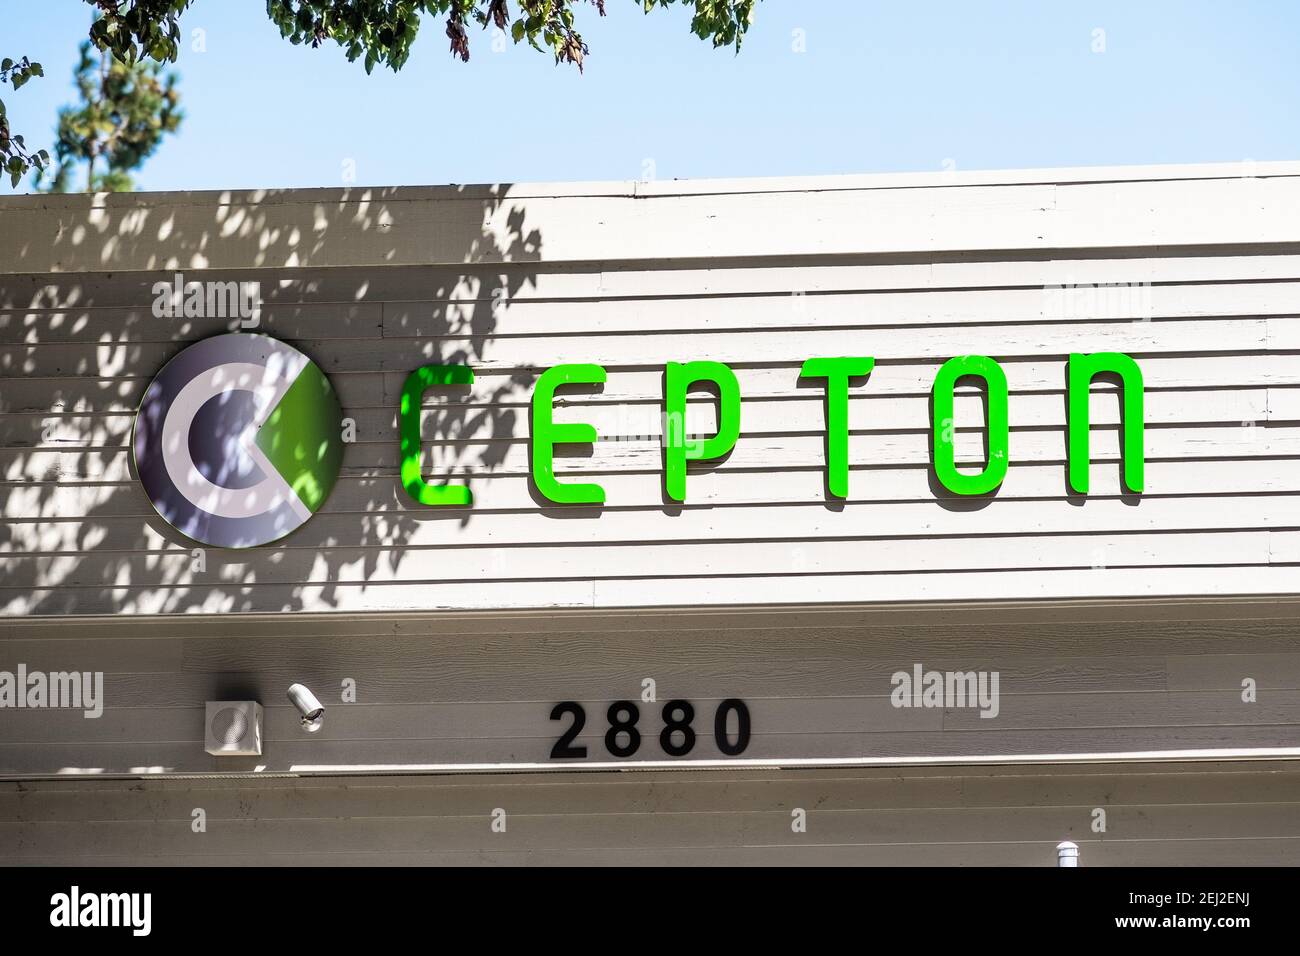 18 settembre 2020 San Jose / CA / USA - il logo Cepton presso la sede centrale della Silicon Valley; Cepton Technologies sviluppa soluzioni basate su lidar per la d Foto Stock